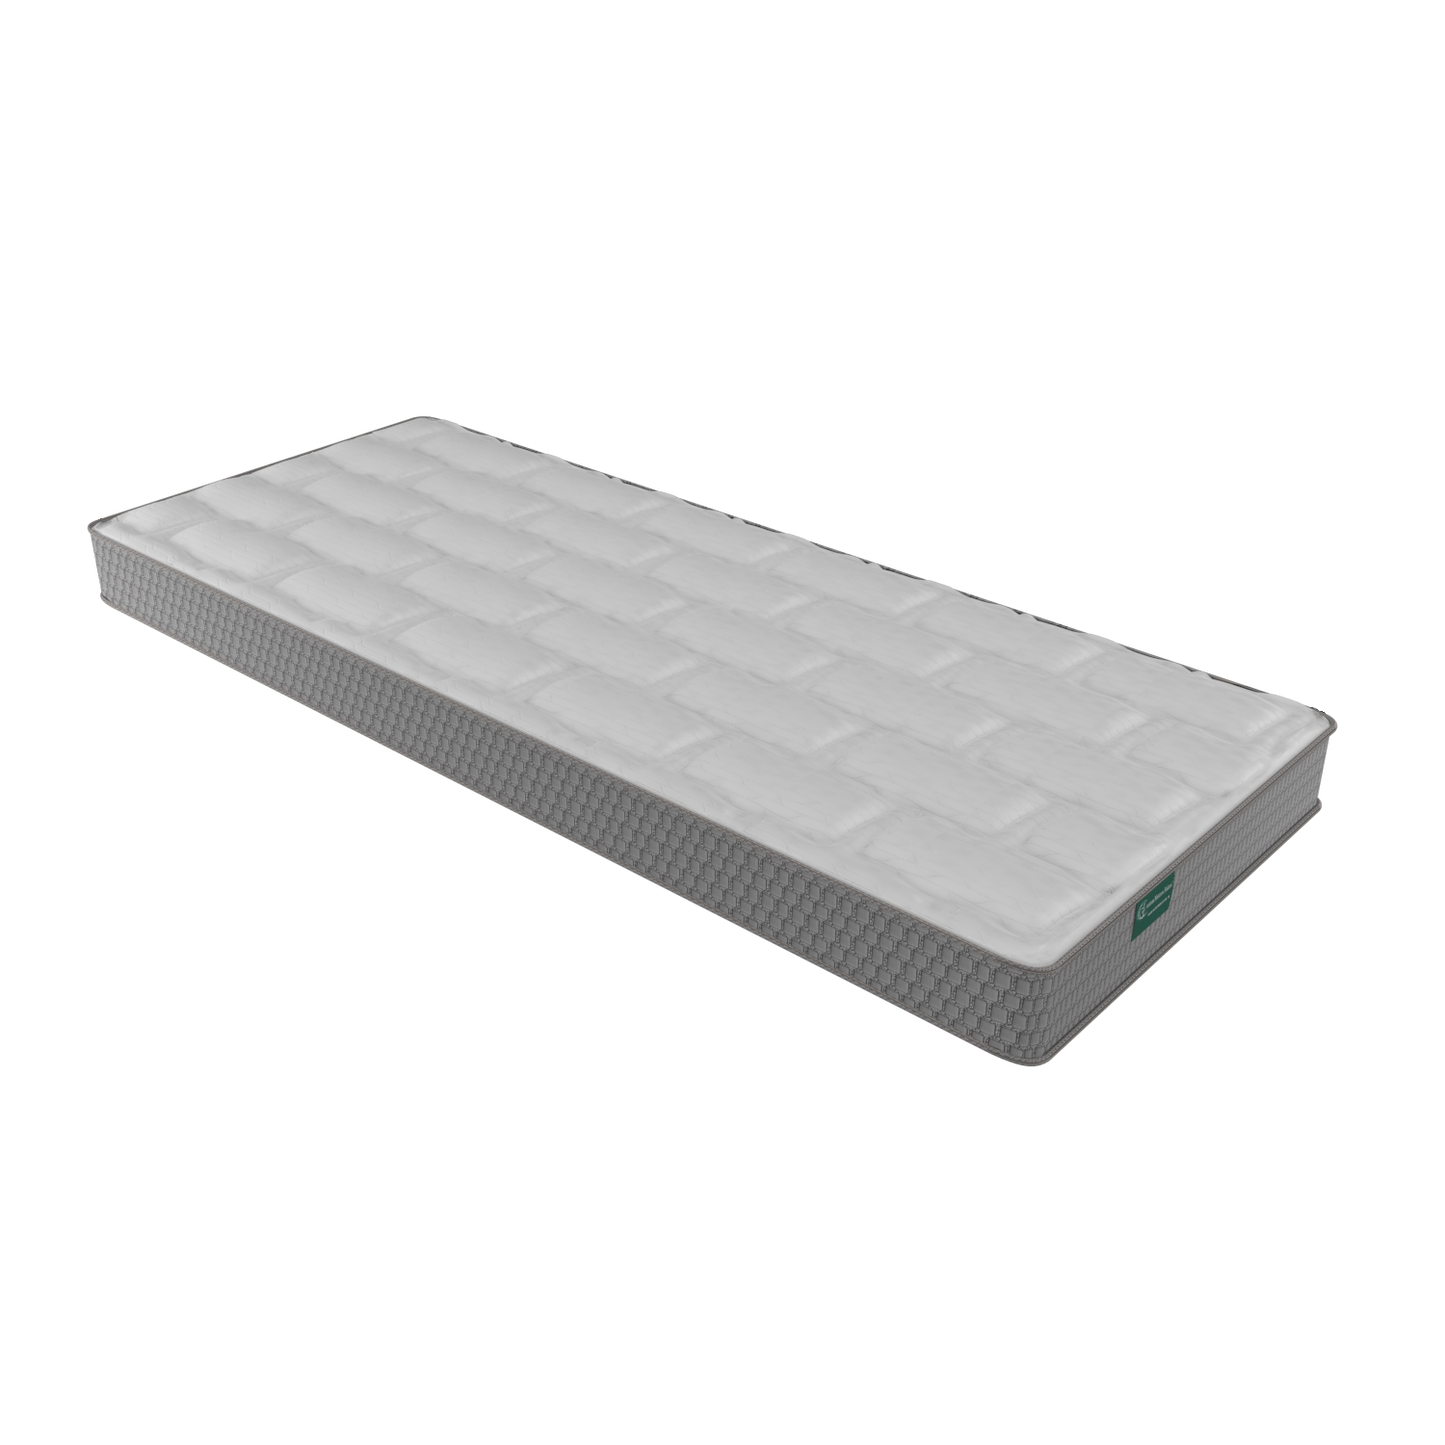 Cape w/ Talalay Latex - 71.5" x 57" mattress w/ 2 notched corners